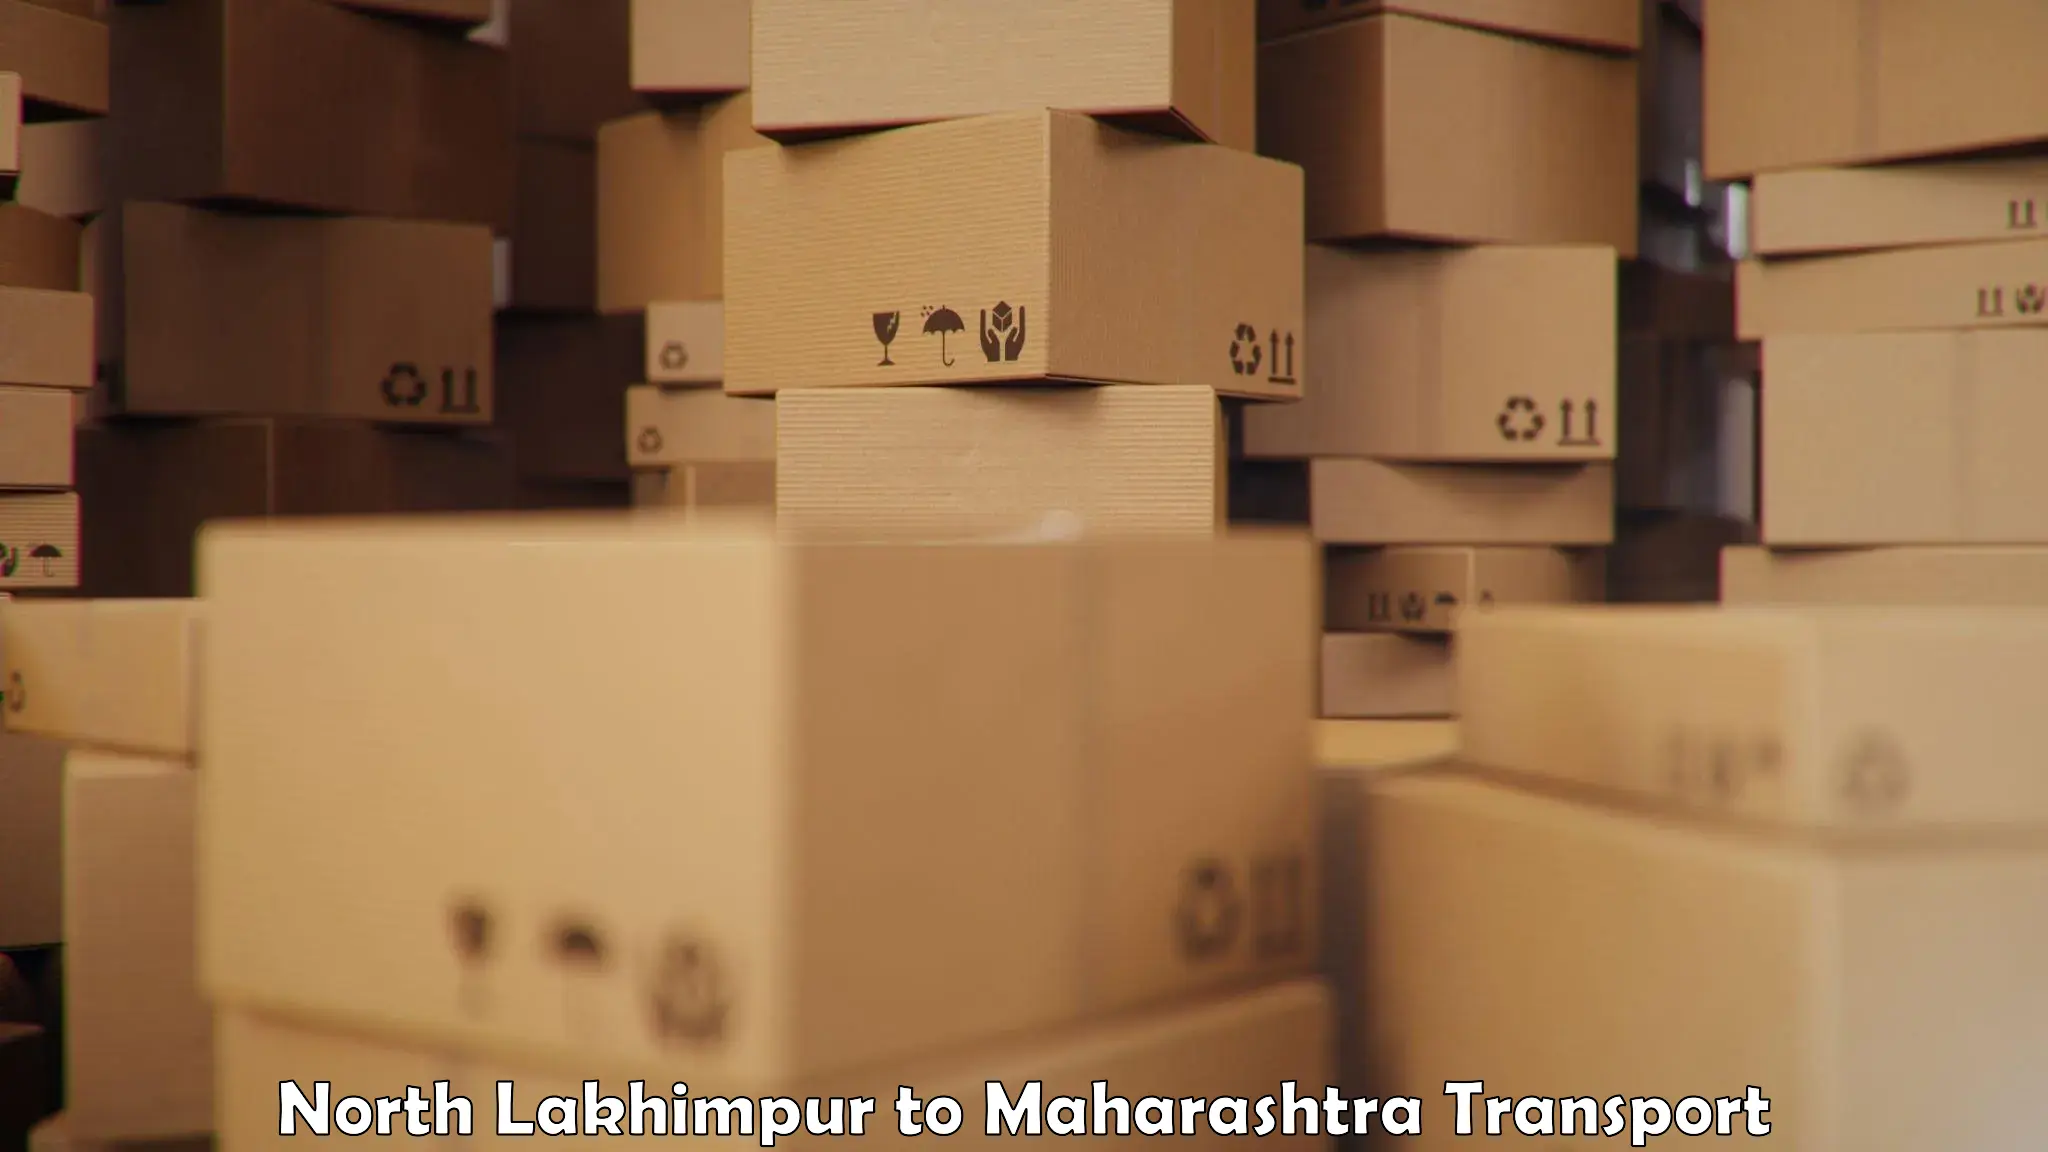 Shipping services in North Lakhimpur to Sindewahi